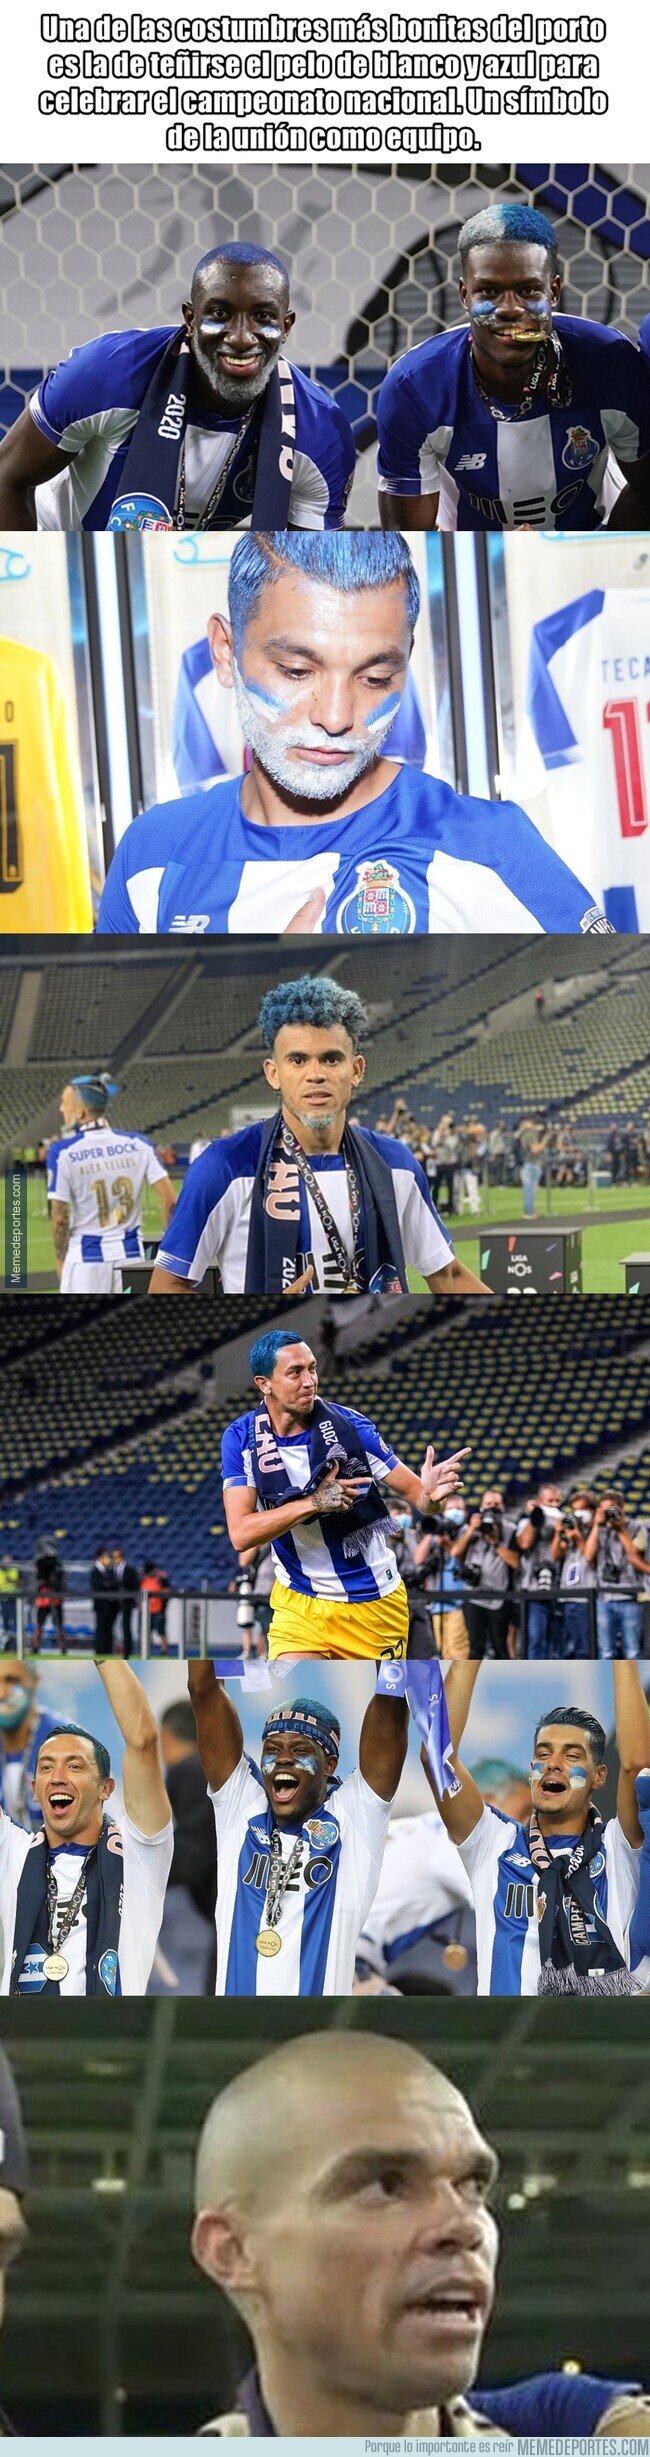 1110166 - La tradición del Porto cada vez que gana la Liga de su país que un jugador no ha podido cumplir